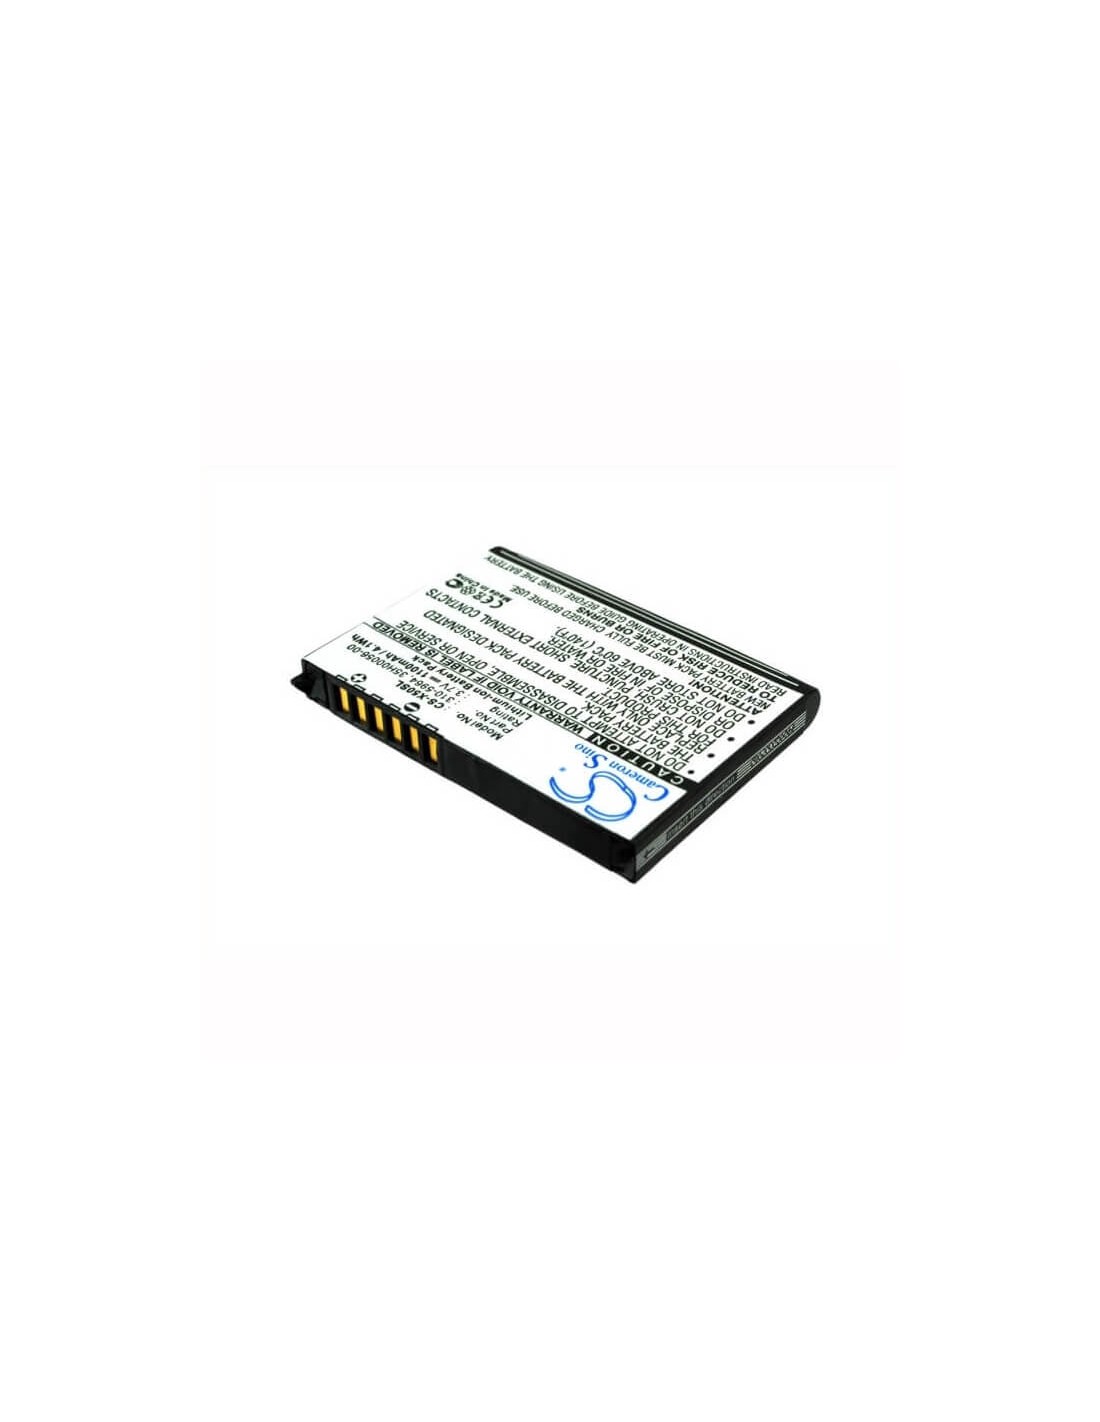 Battery for Dell Axim X50, Axim X50v, Axim X51 3.7V, 1100mAh - 4.07Wh